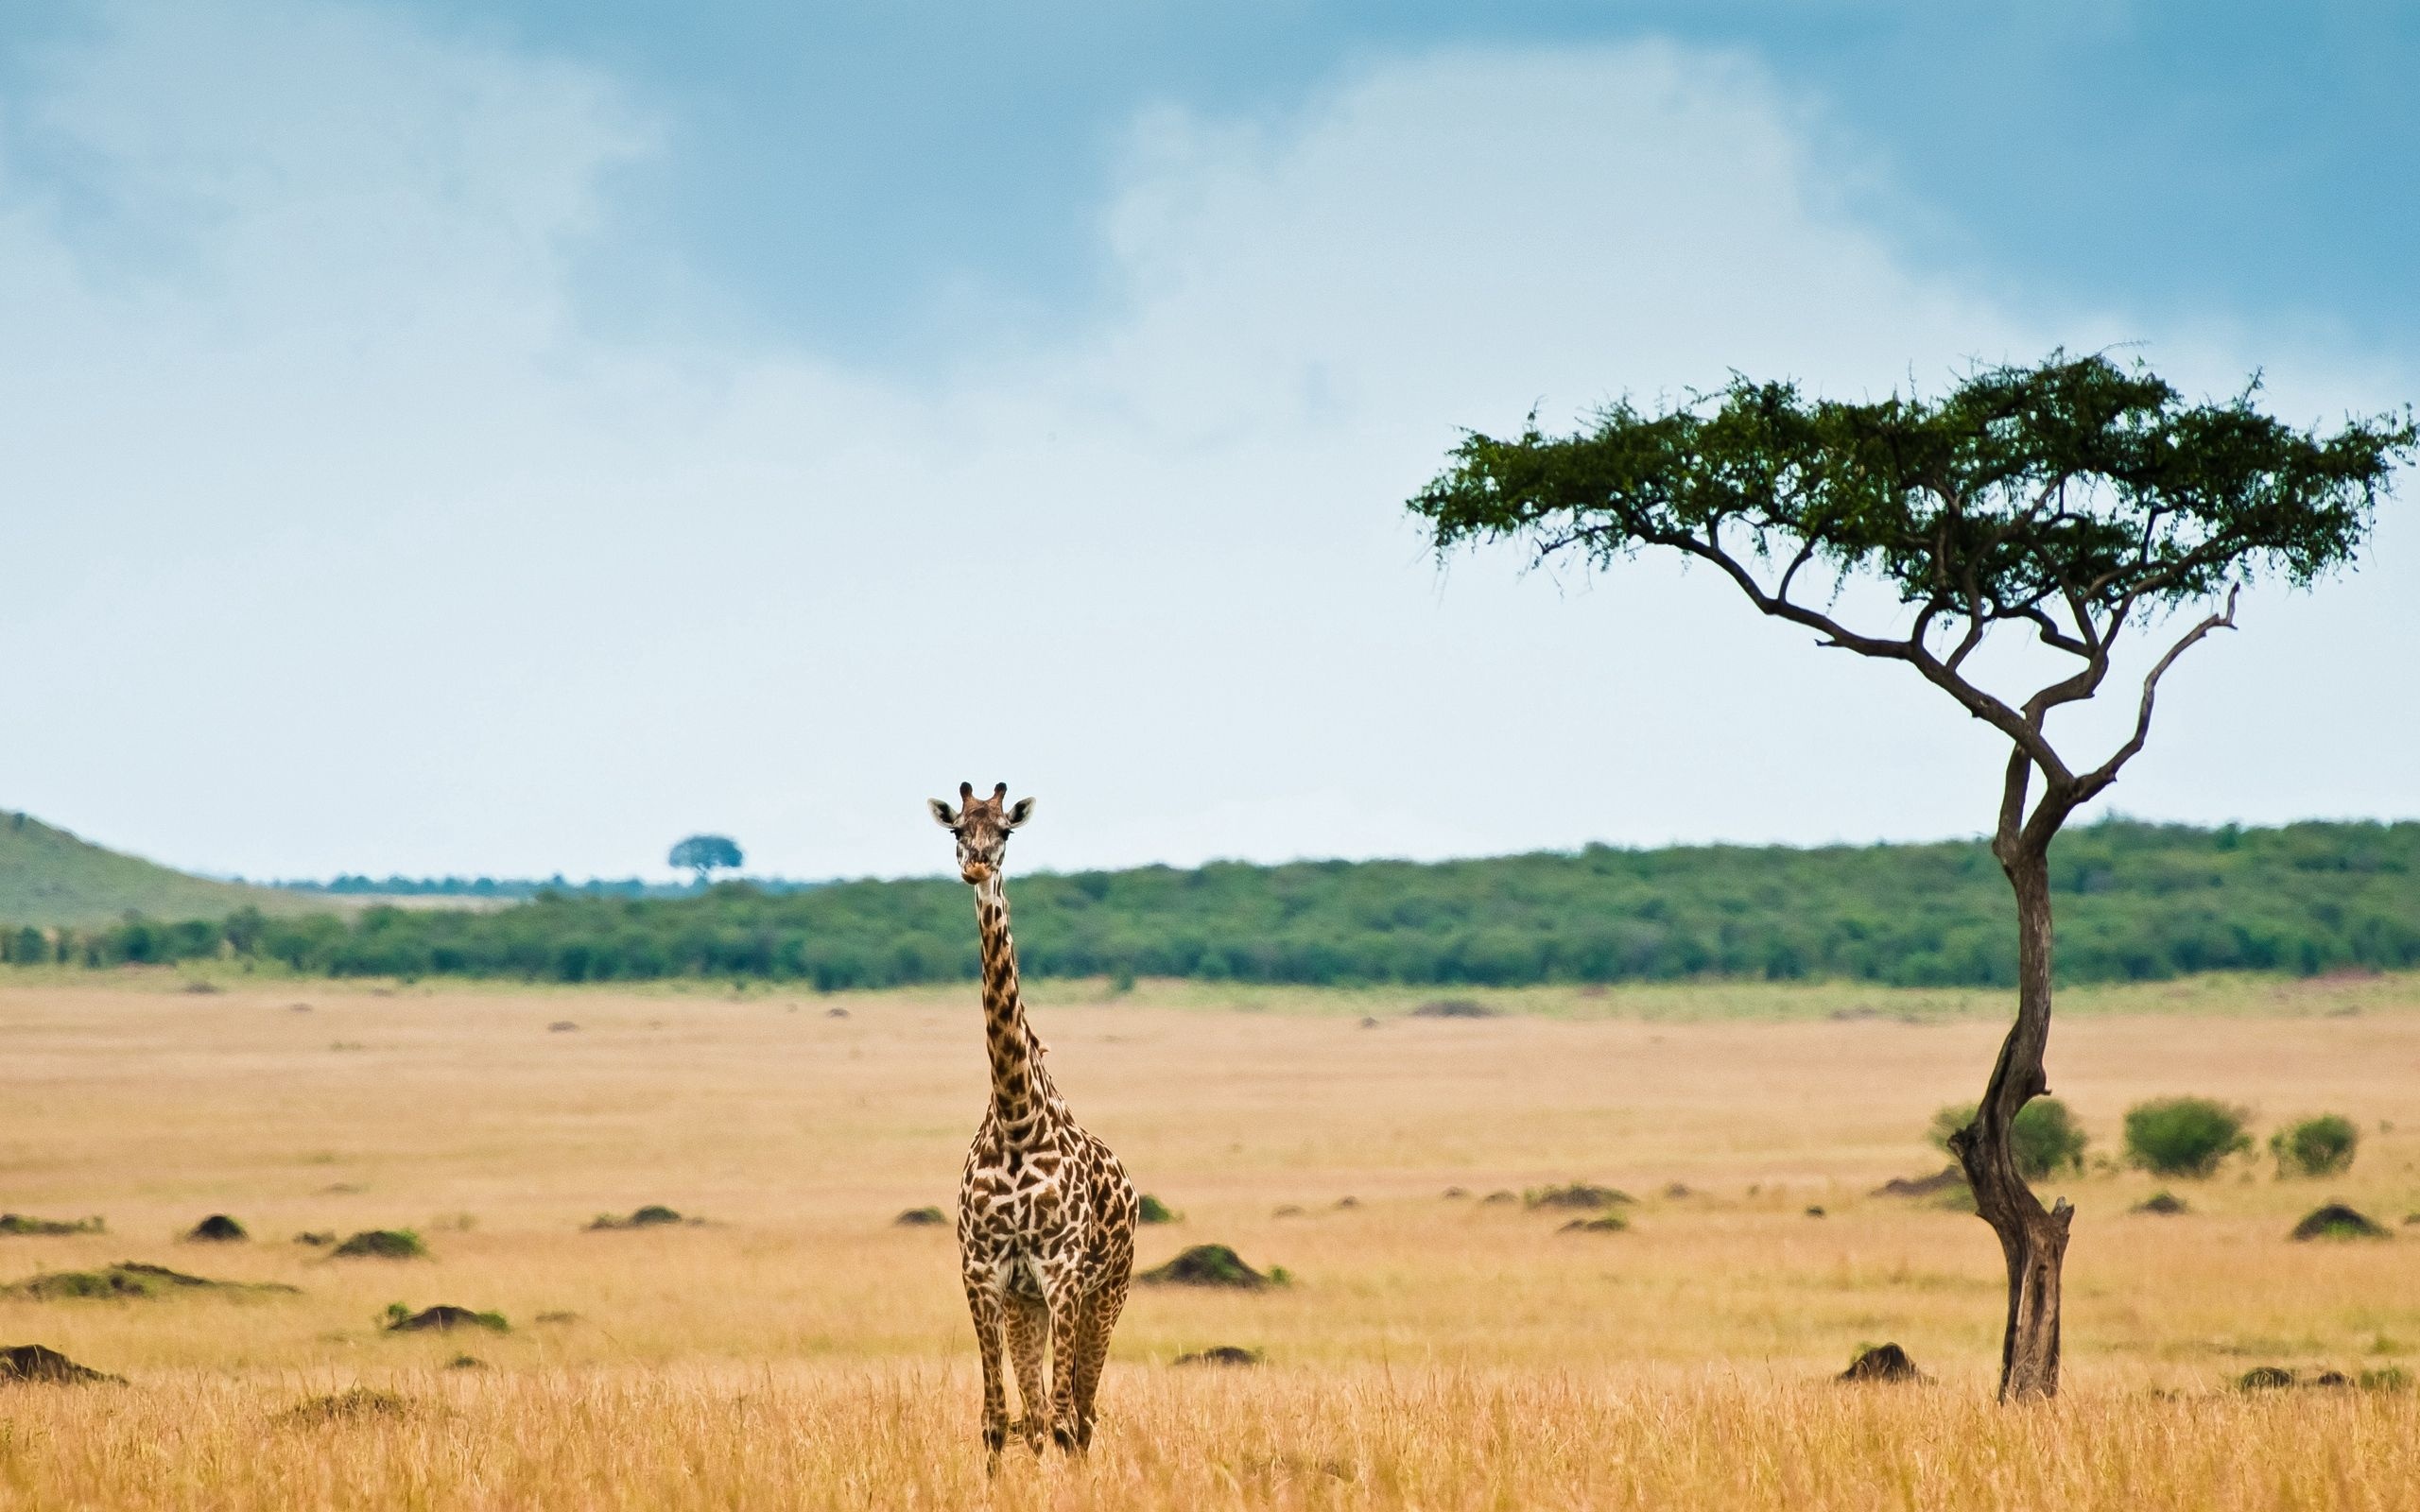 Exploring Africa, Safari adventure, Cultural diversity, Natural wonders, 2560x1600 HD Desktop